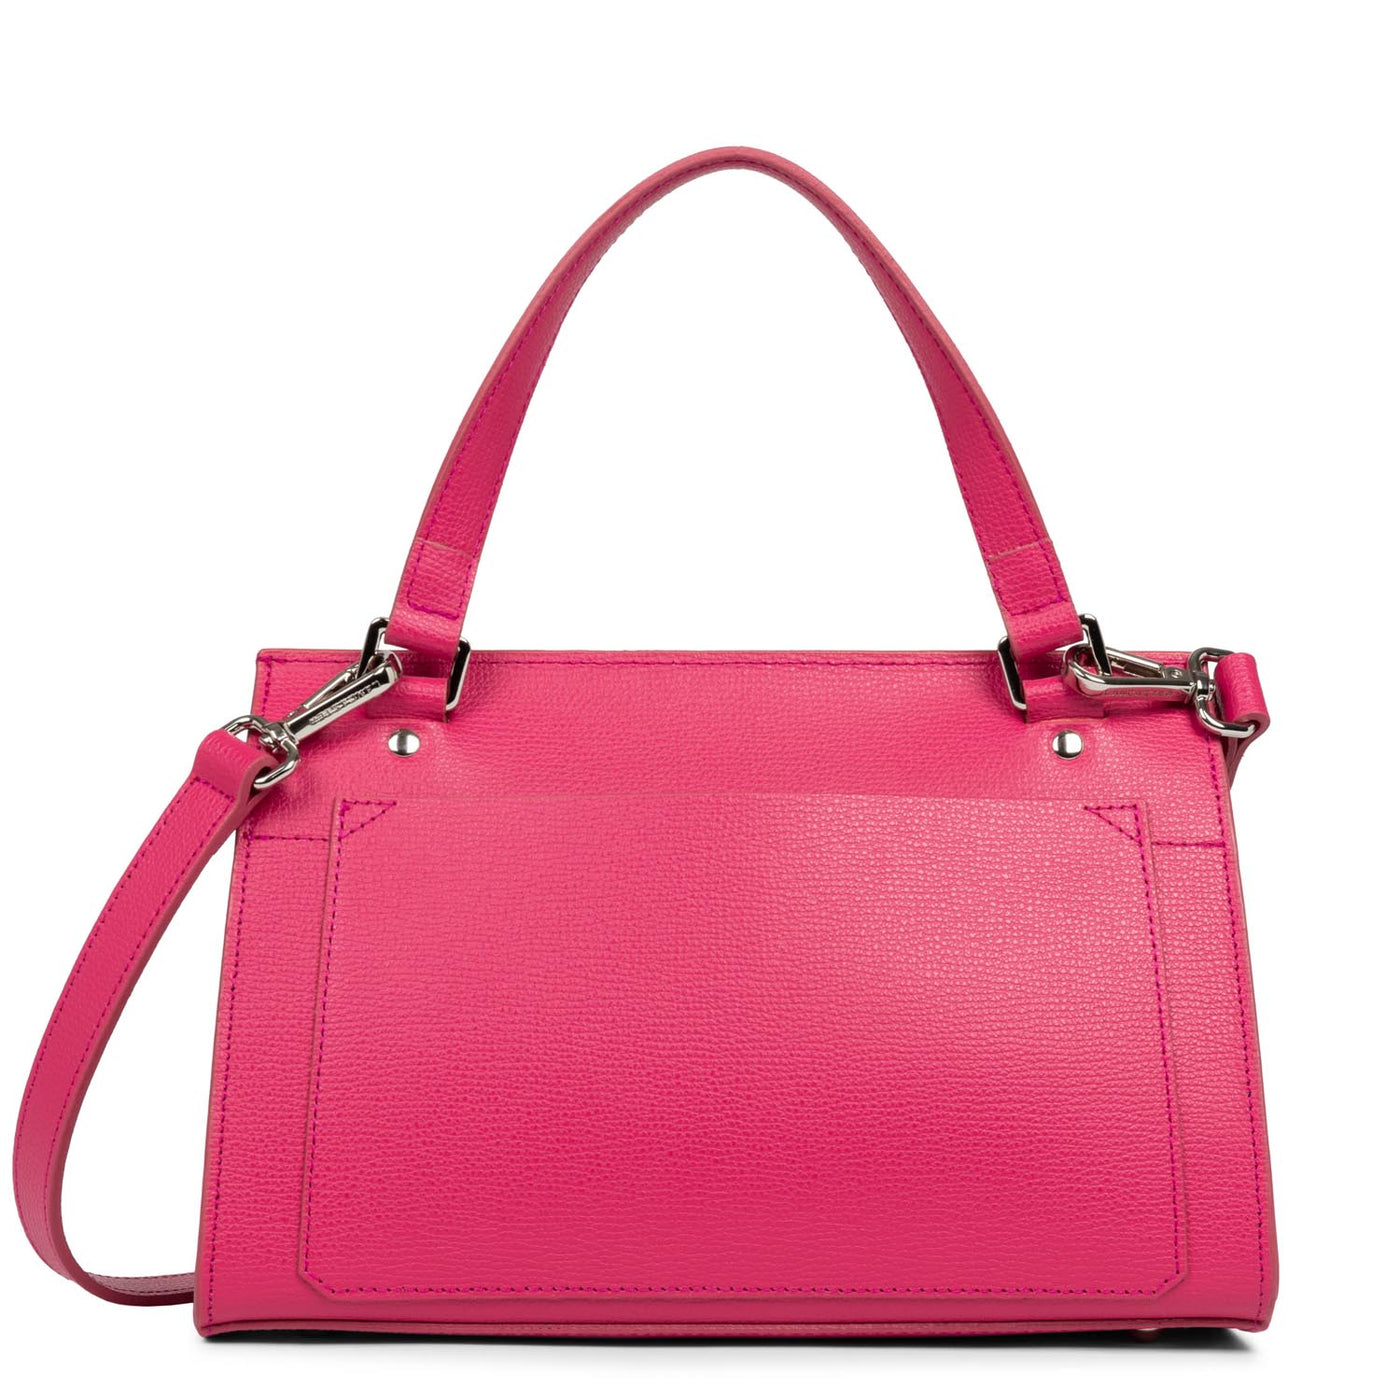 m handbag - sierra #couleur_fuxia